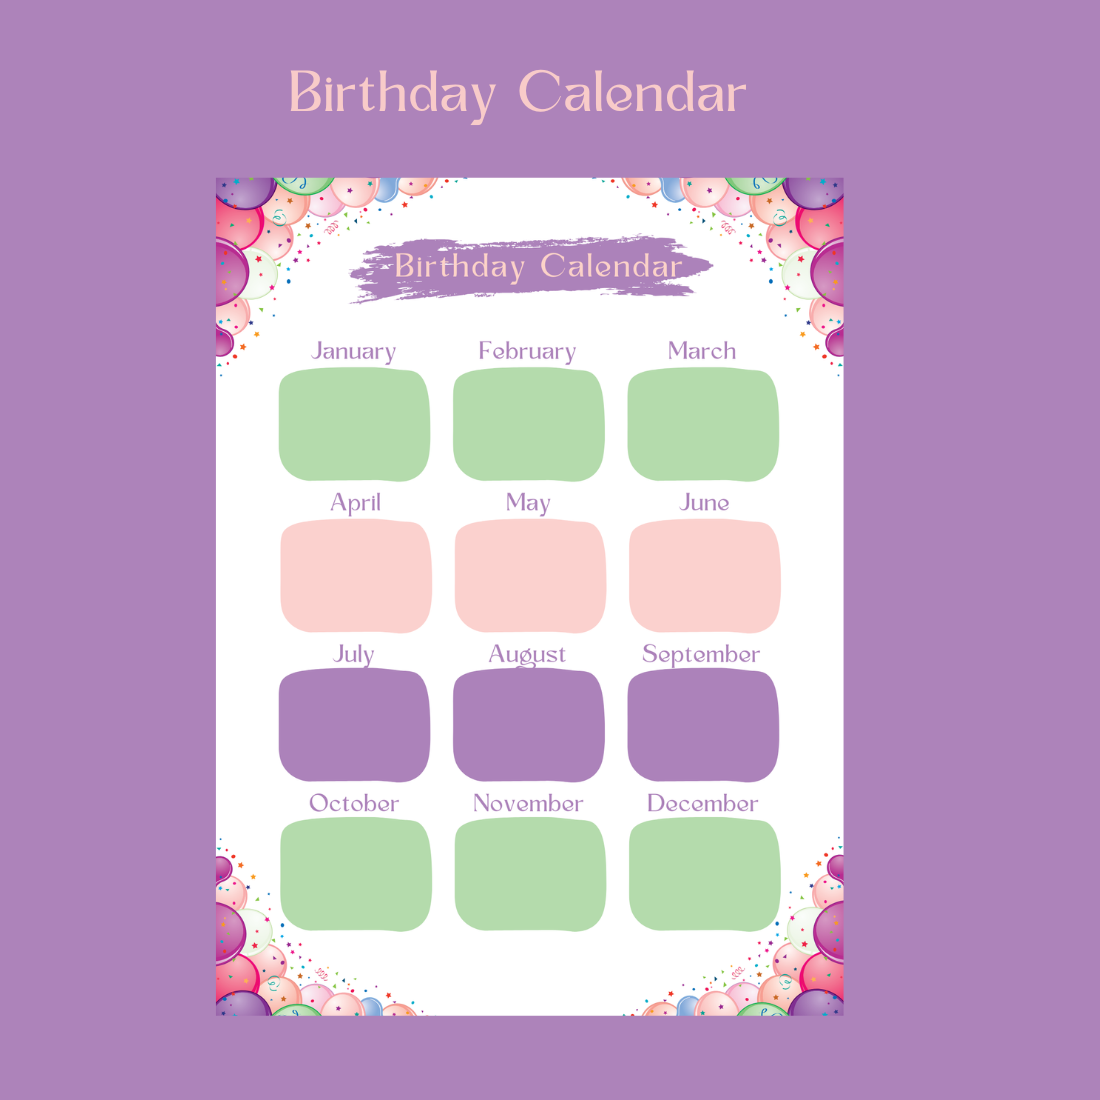 Birthday calendar, printable calendar, A4 PDF, birthday organizer, monthly calendar, birthday reminders, elegant calendar template, high-resolution calendar preview image.